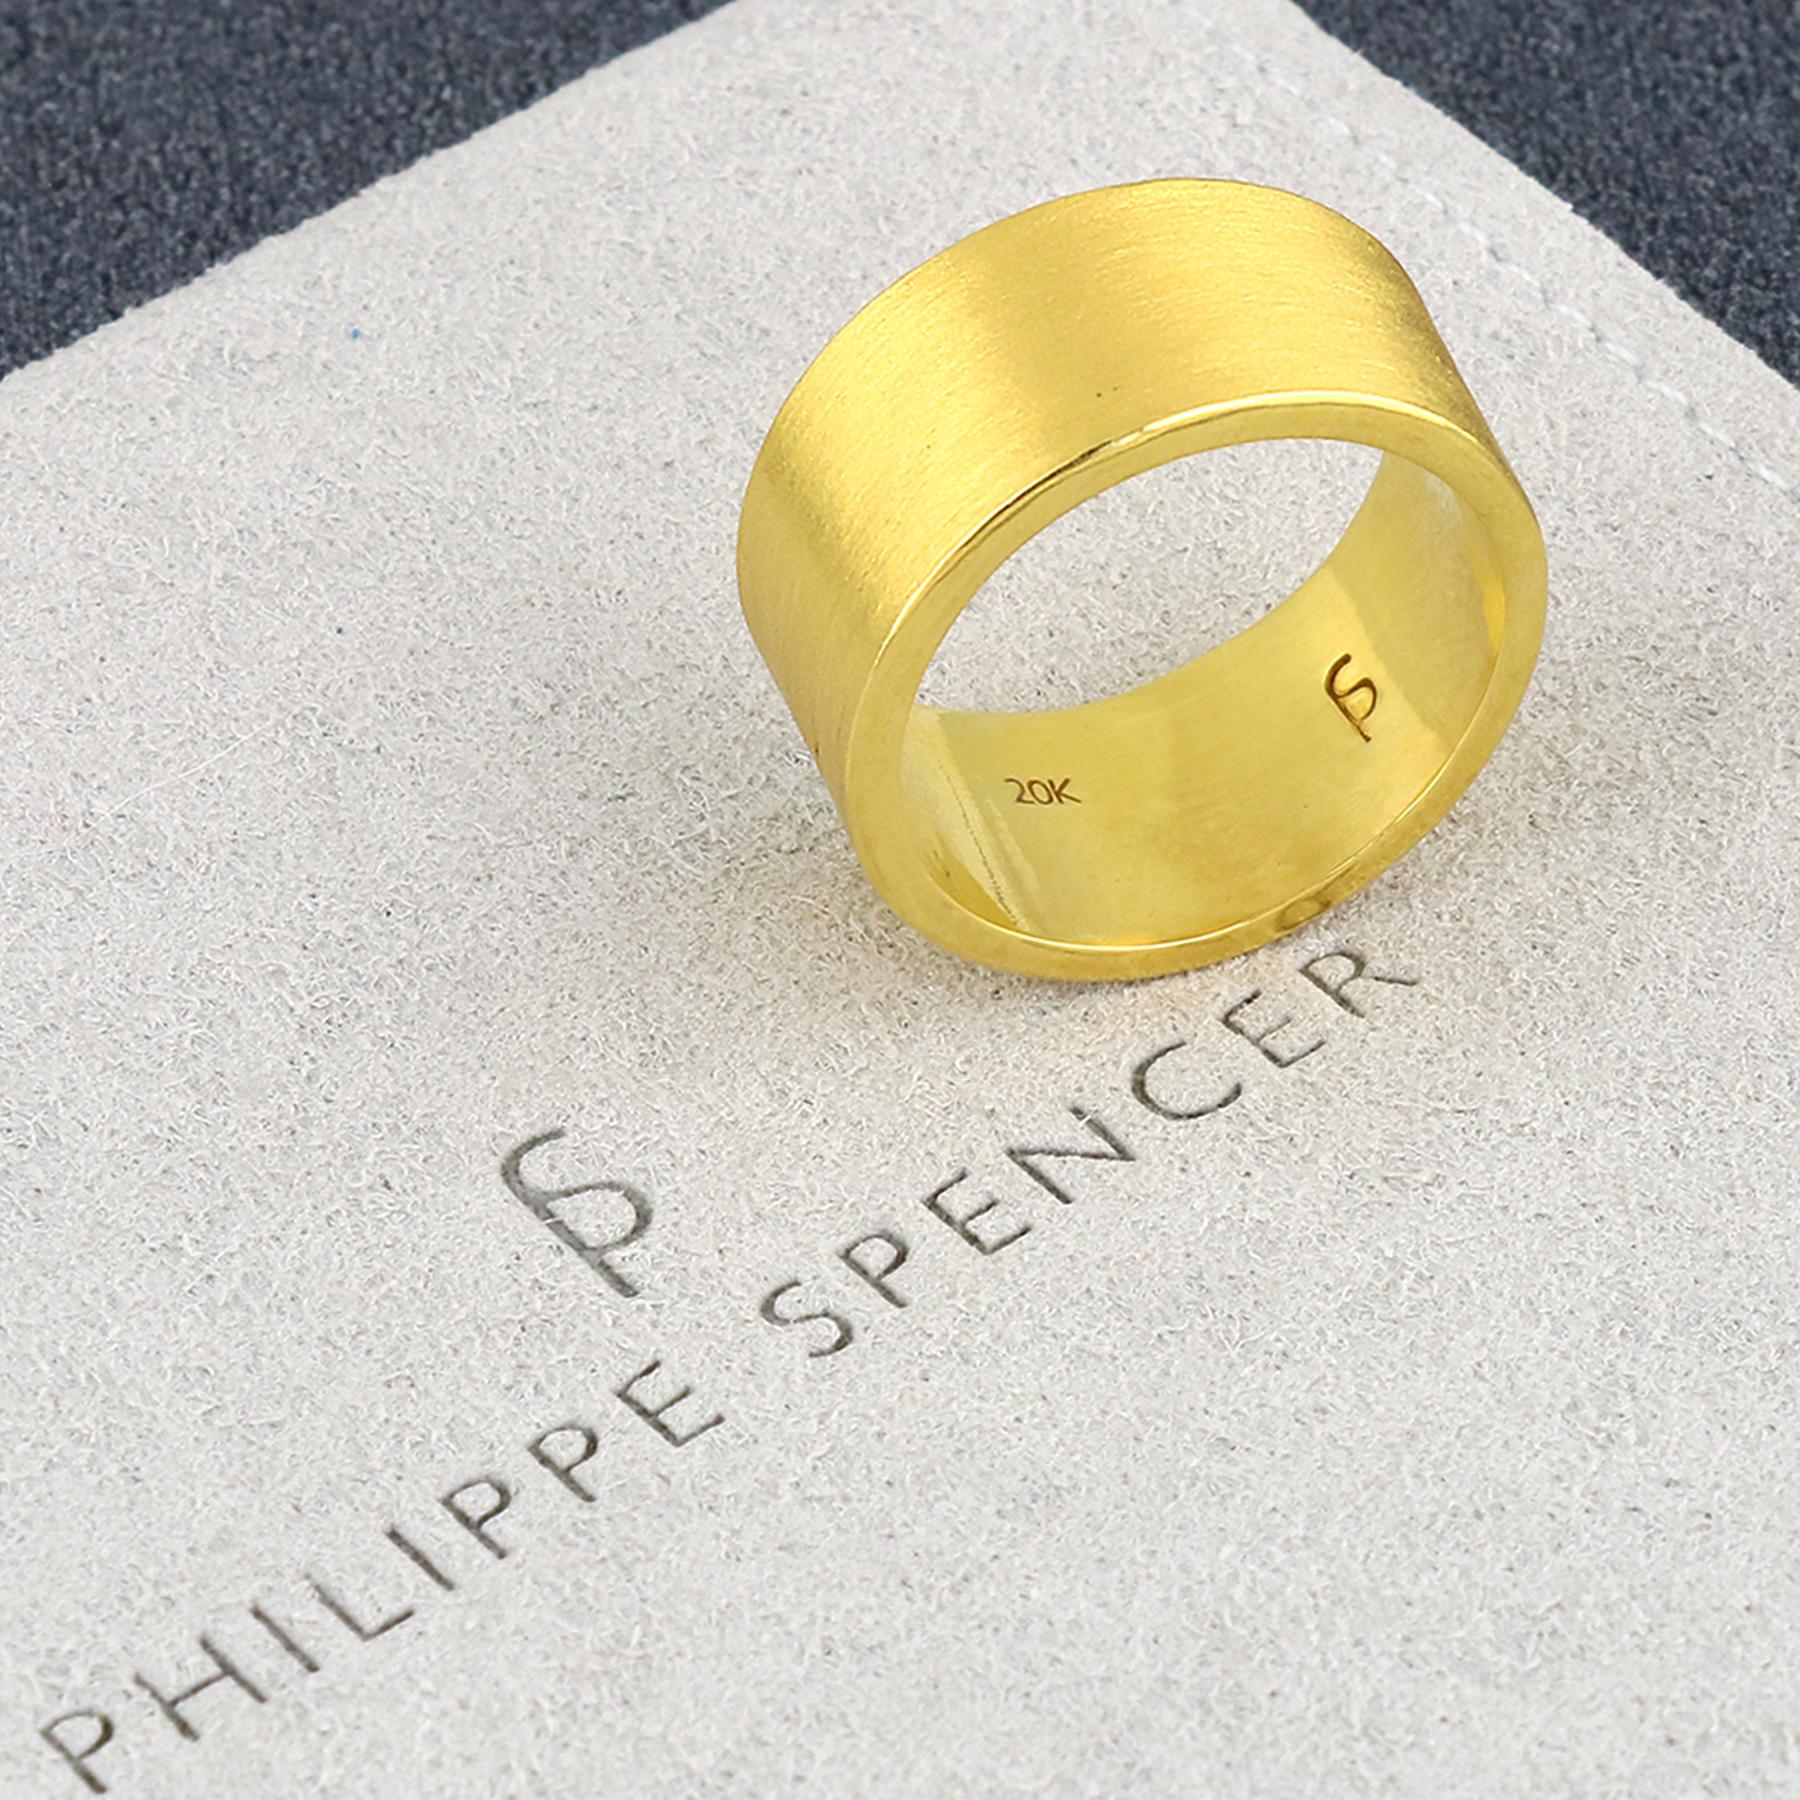 PHILIPPE-SPENCER - Bracelet en or massif 20K de 10 x 1,5 mm, forgé à la main. Extérieur fortement mat, intérieur poli miroir.  Chaque bracelet est une œuvre d'art unique. Ce bracelet PHILIPPE SPENCER en or massif 20 carats fait à la main est